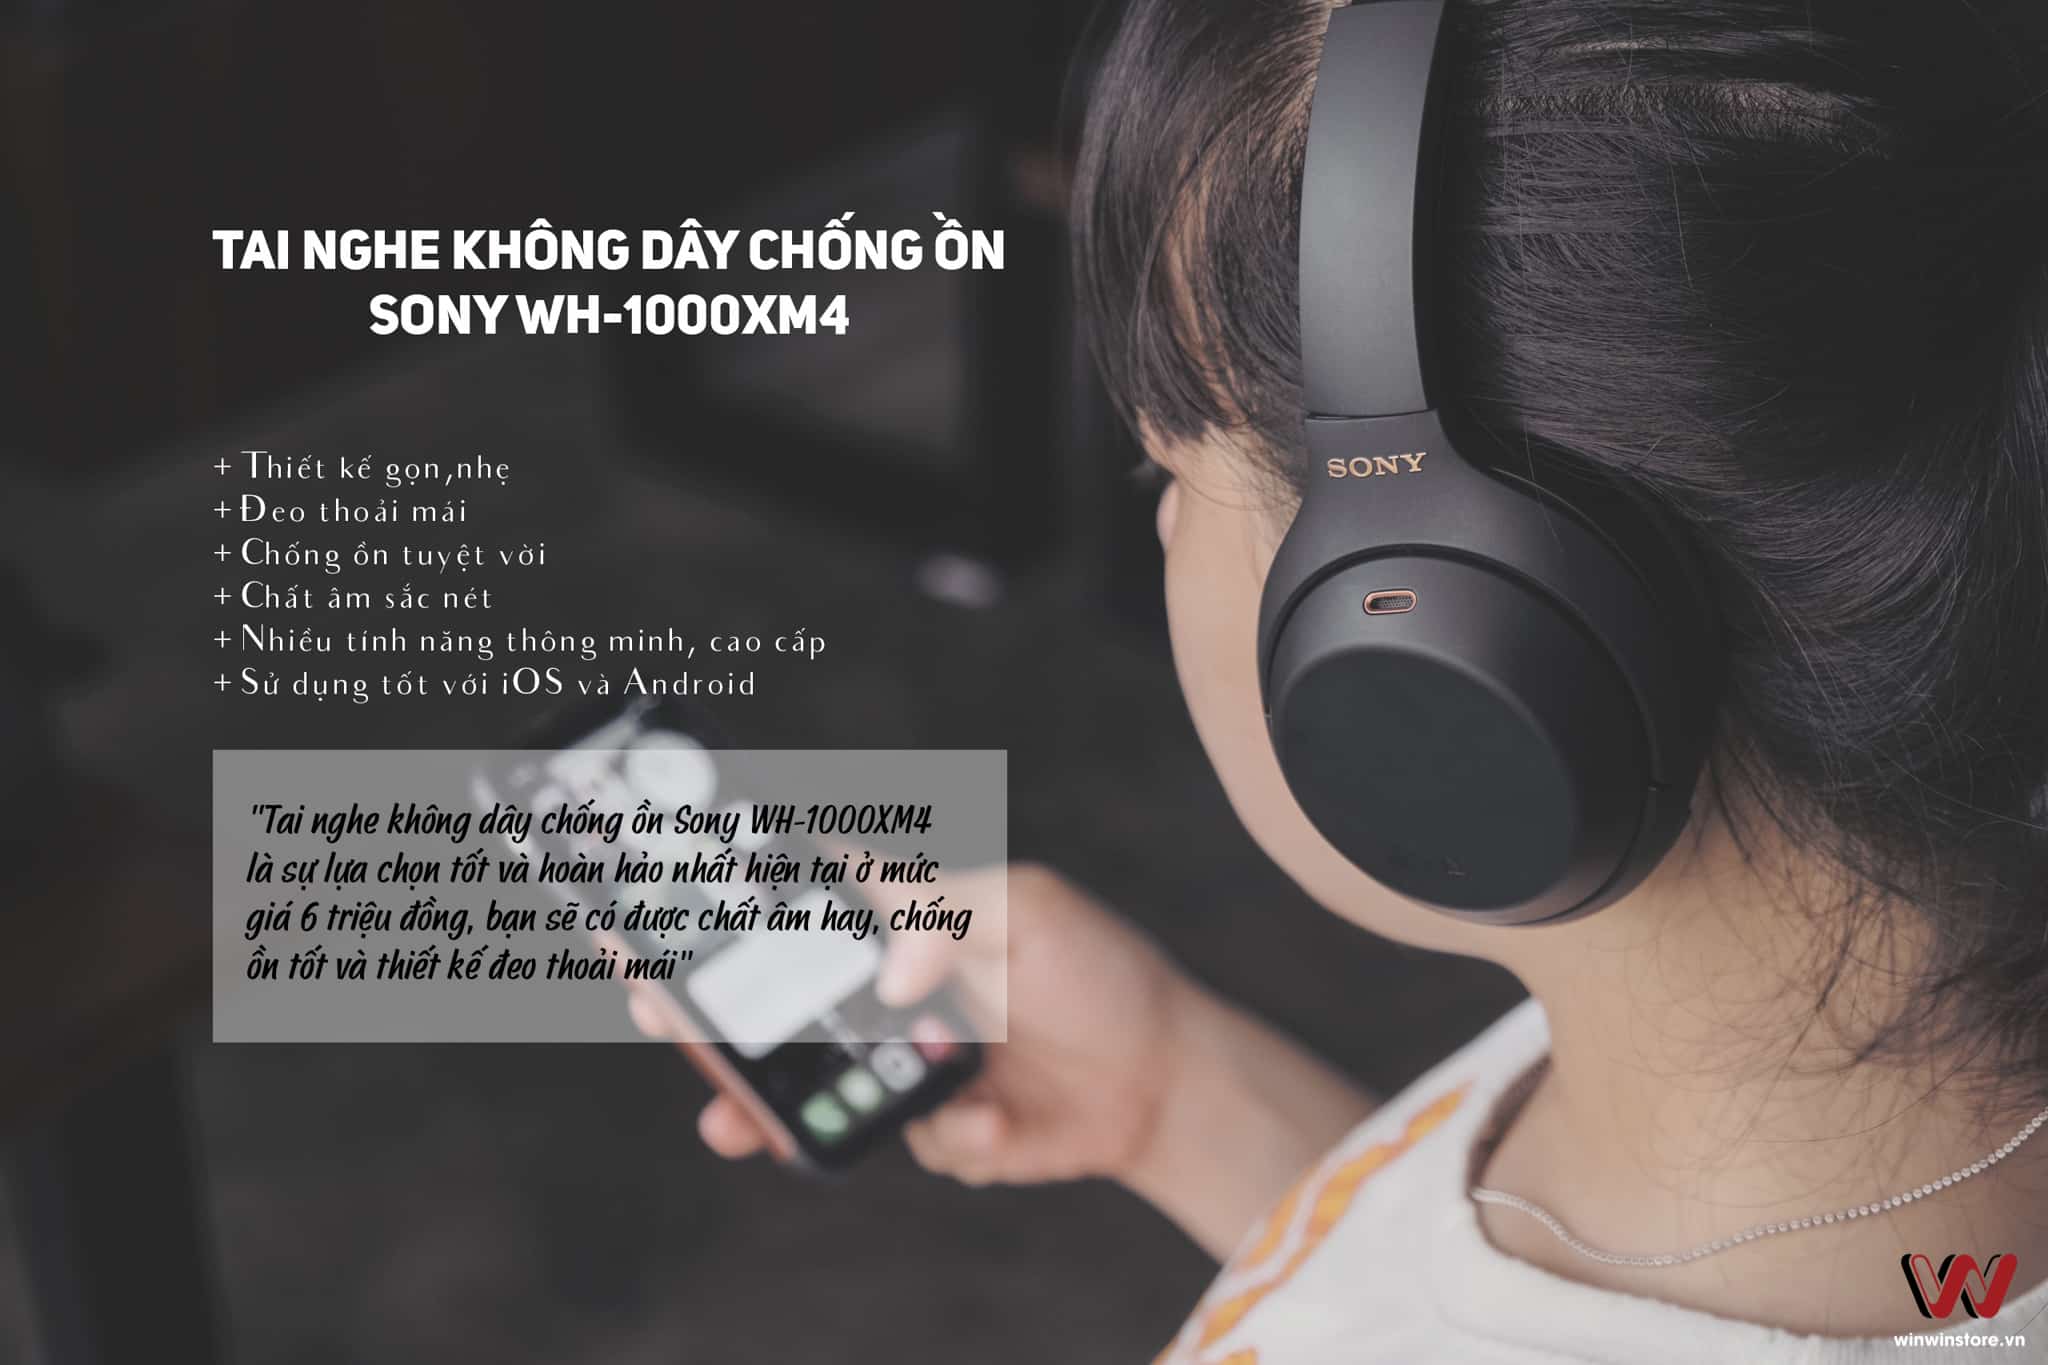 Tai nghe chống ồn cao cấp với mức giá 6 triệu đồng? Sự lựa chọn hoàn hảo chính là Sony WH-1000XM4